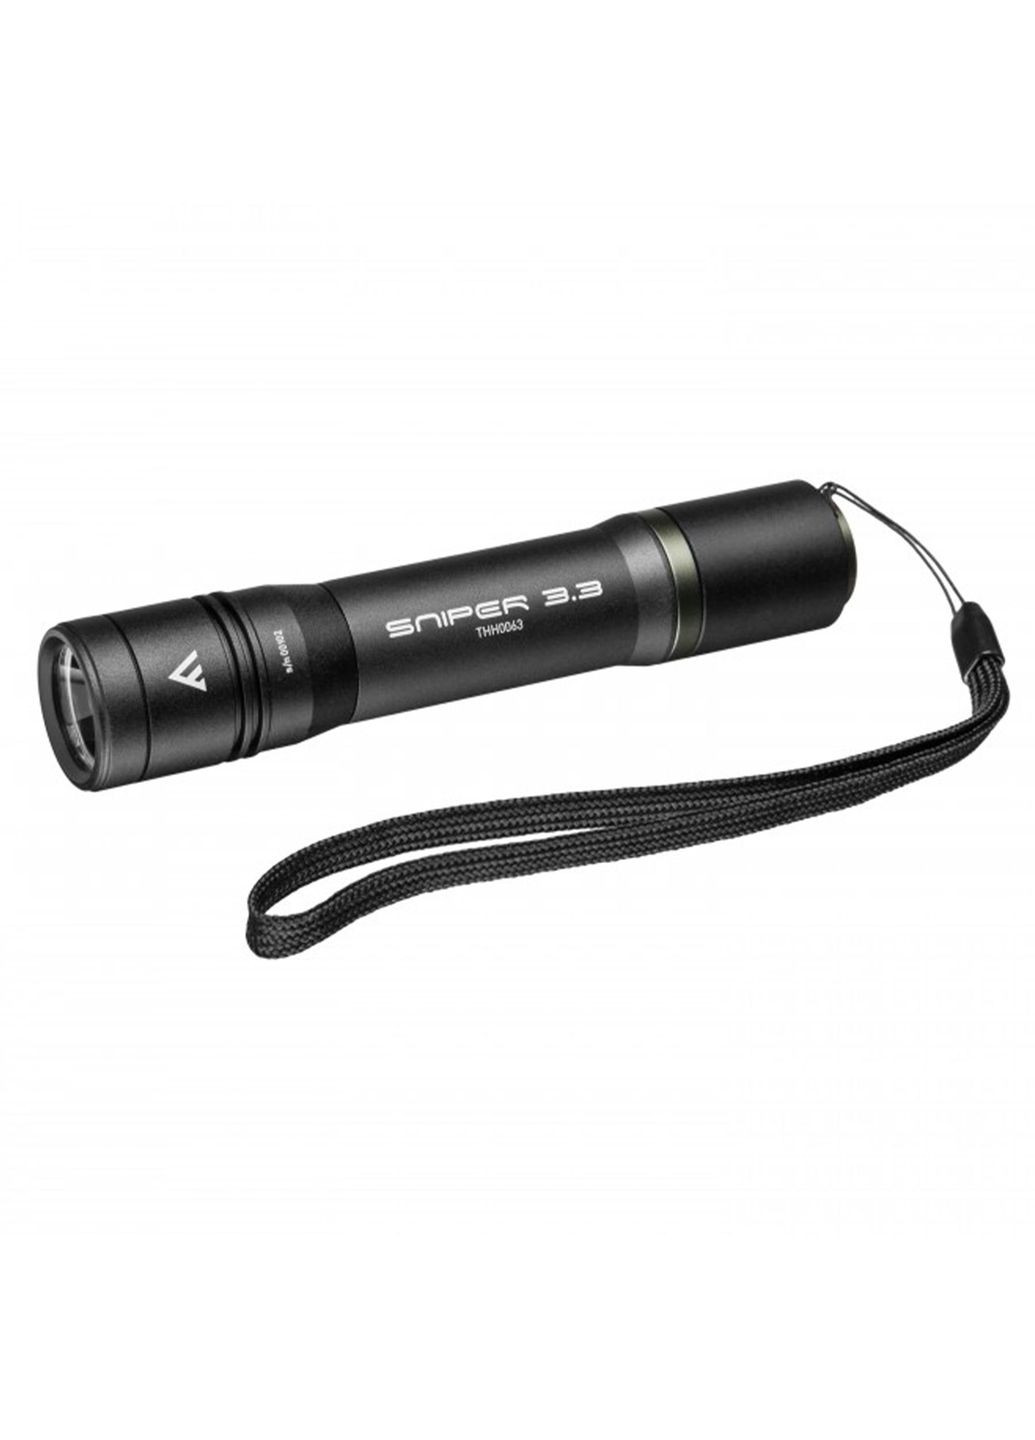 Фонарь тактический Sniper 3.3 (1000 Lm) Focus Powerbank USB Rechargeable Mactronic (278002928)